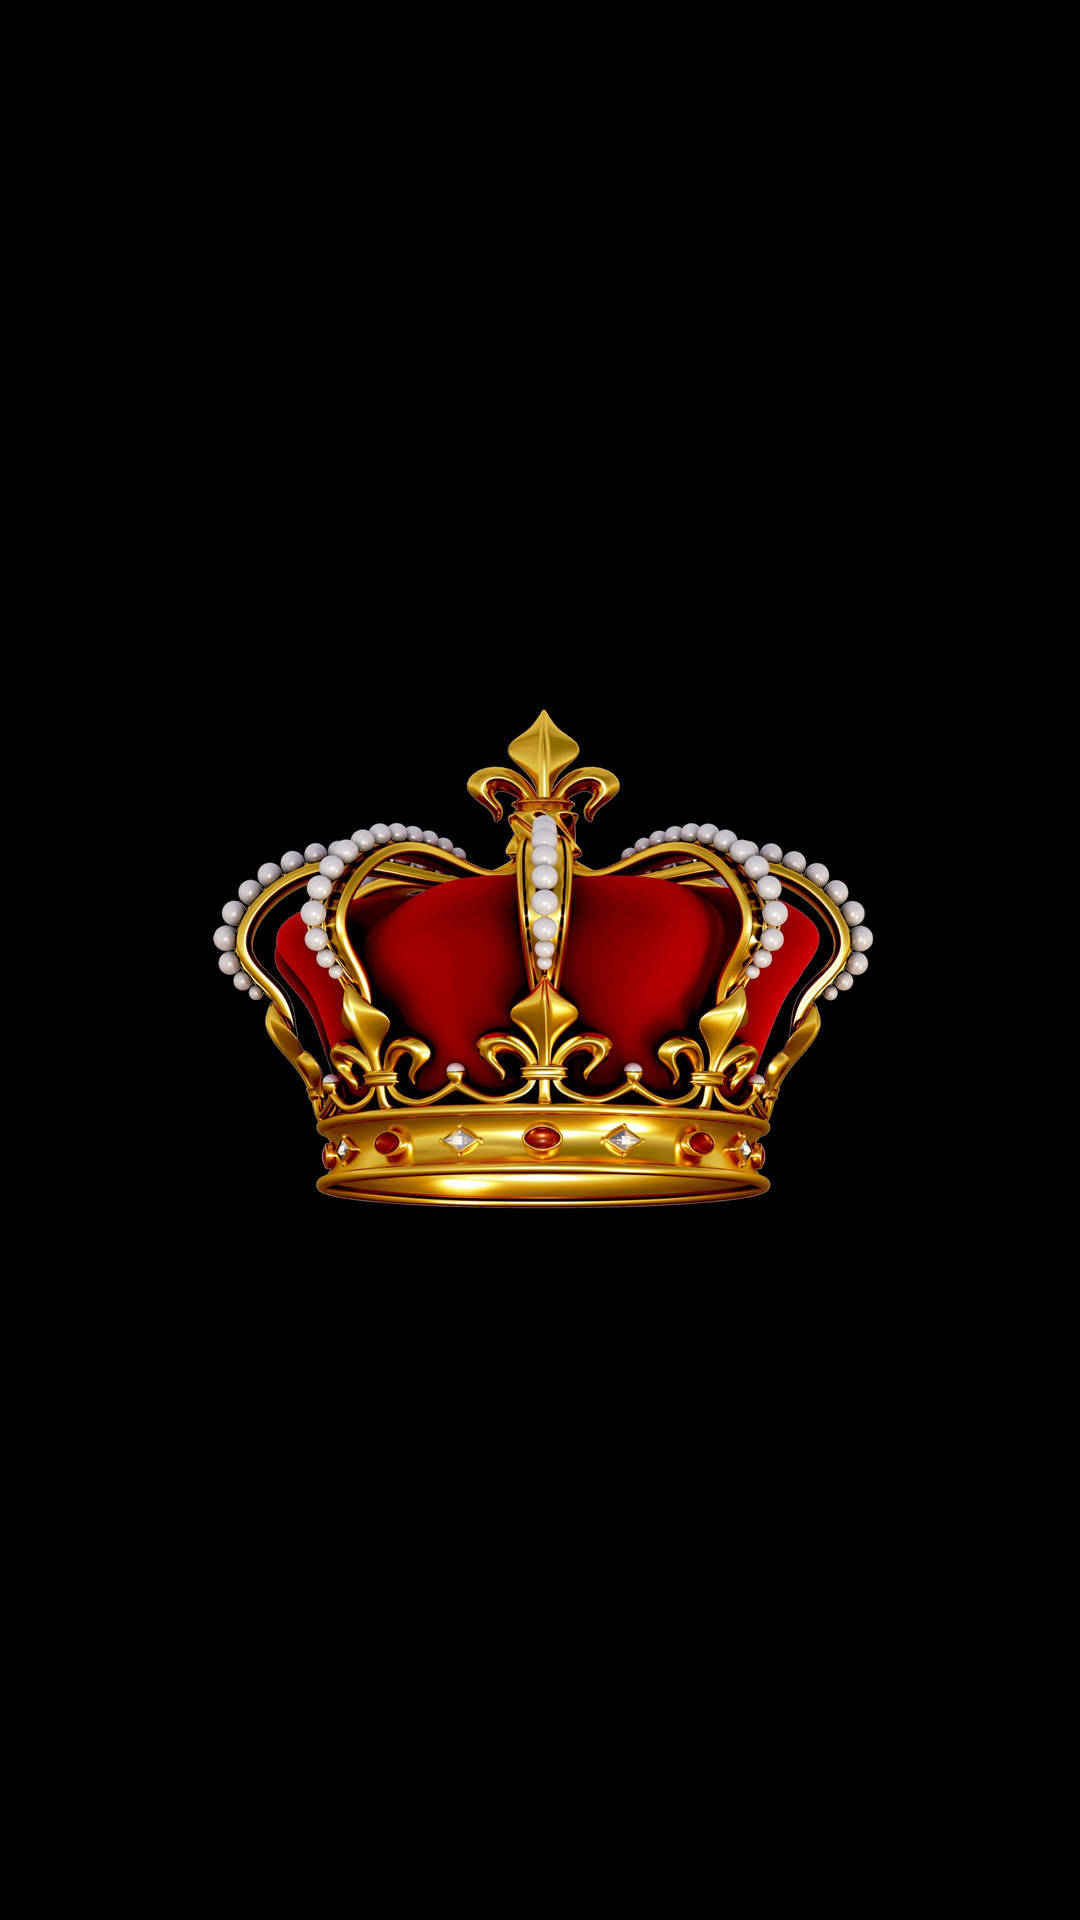 AMOLED Android Royal Crown Wallpaper